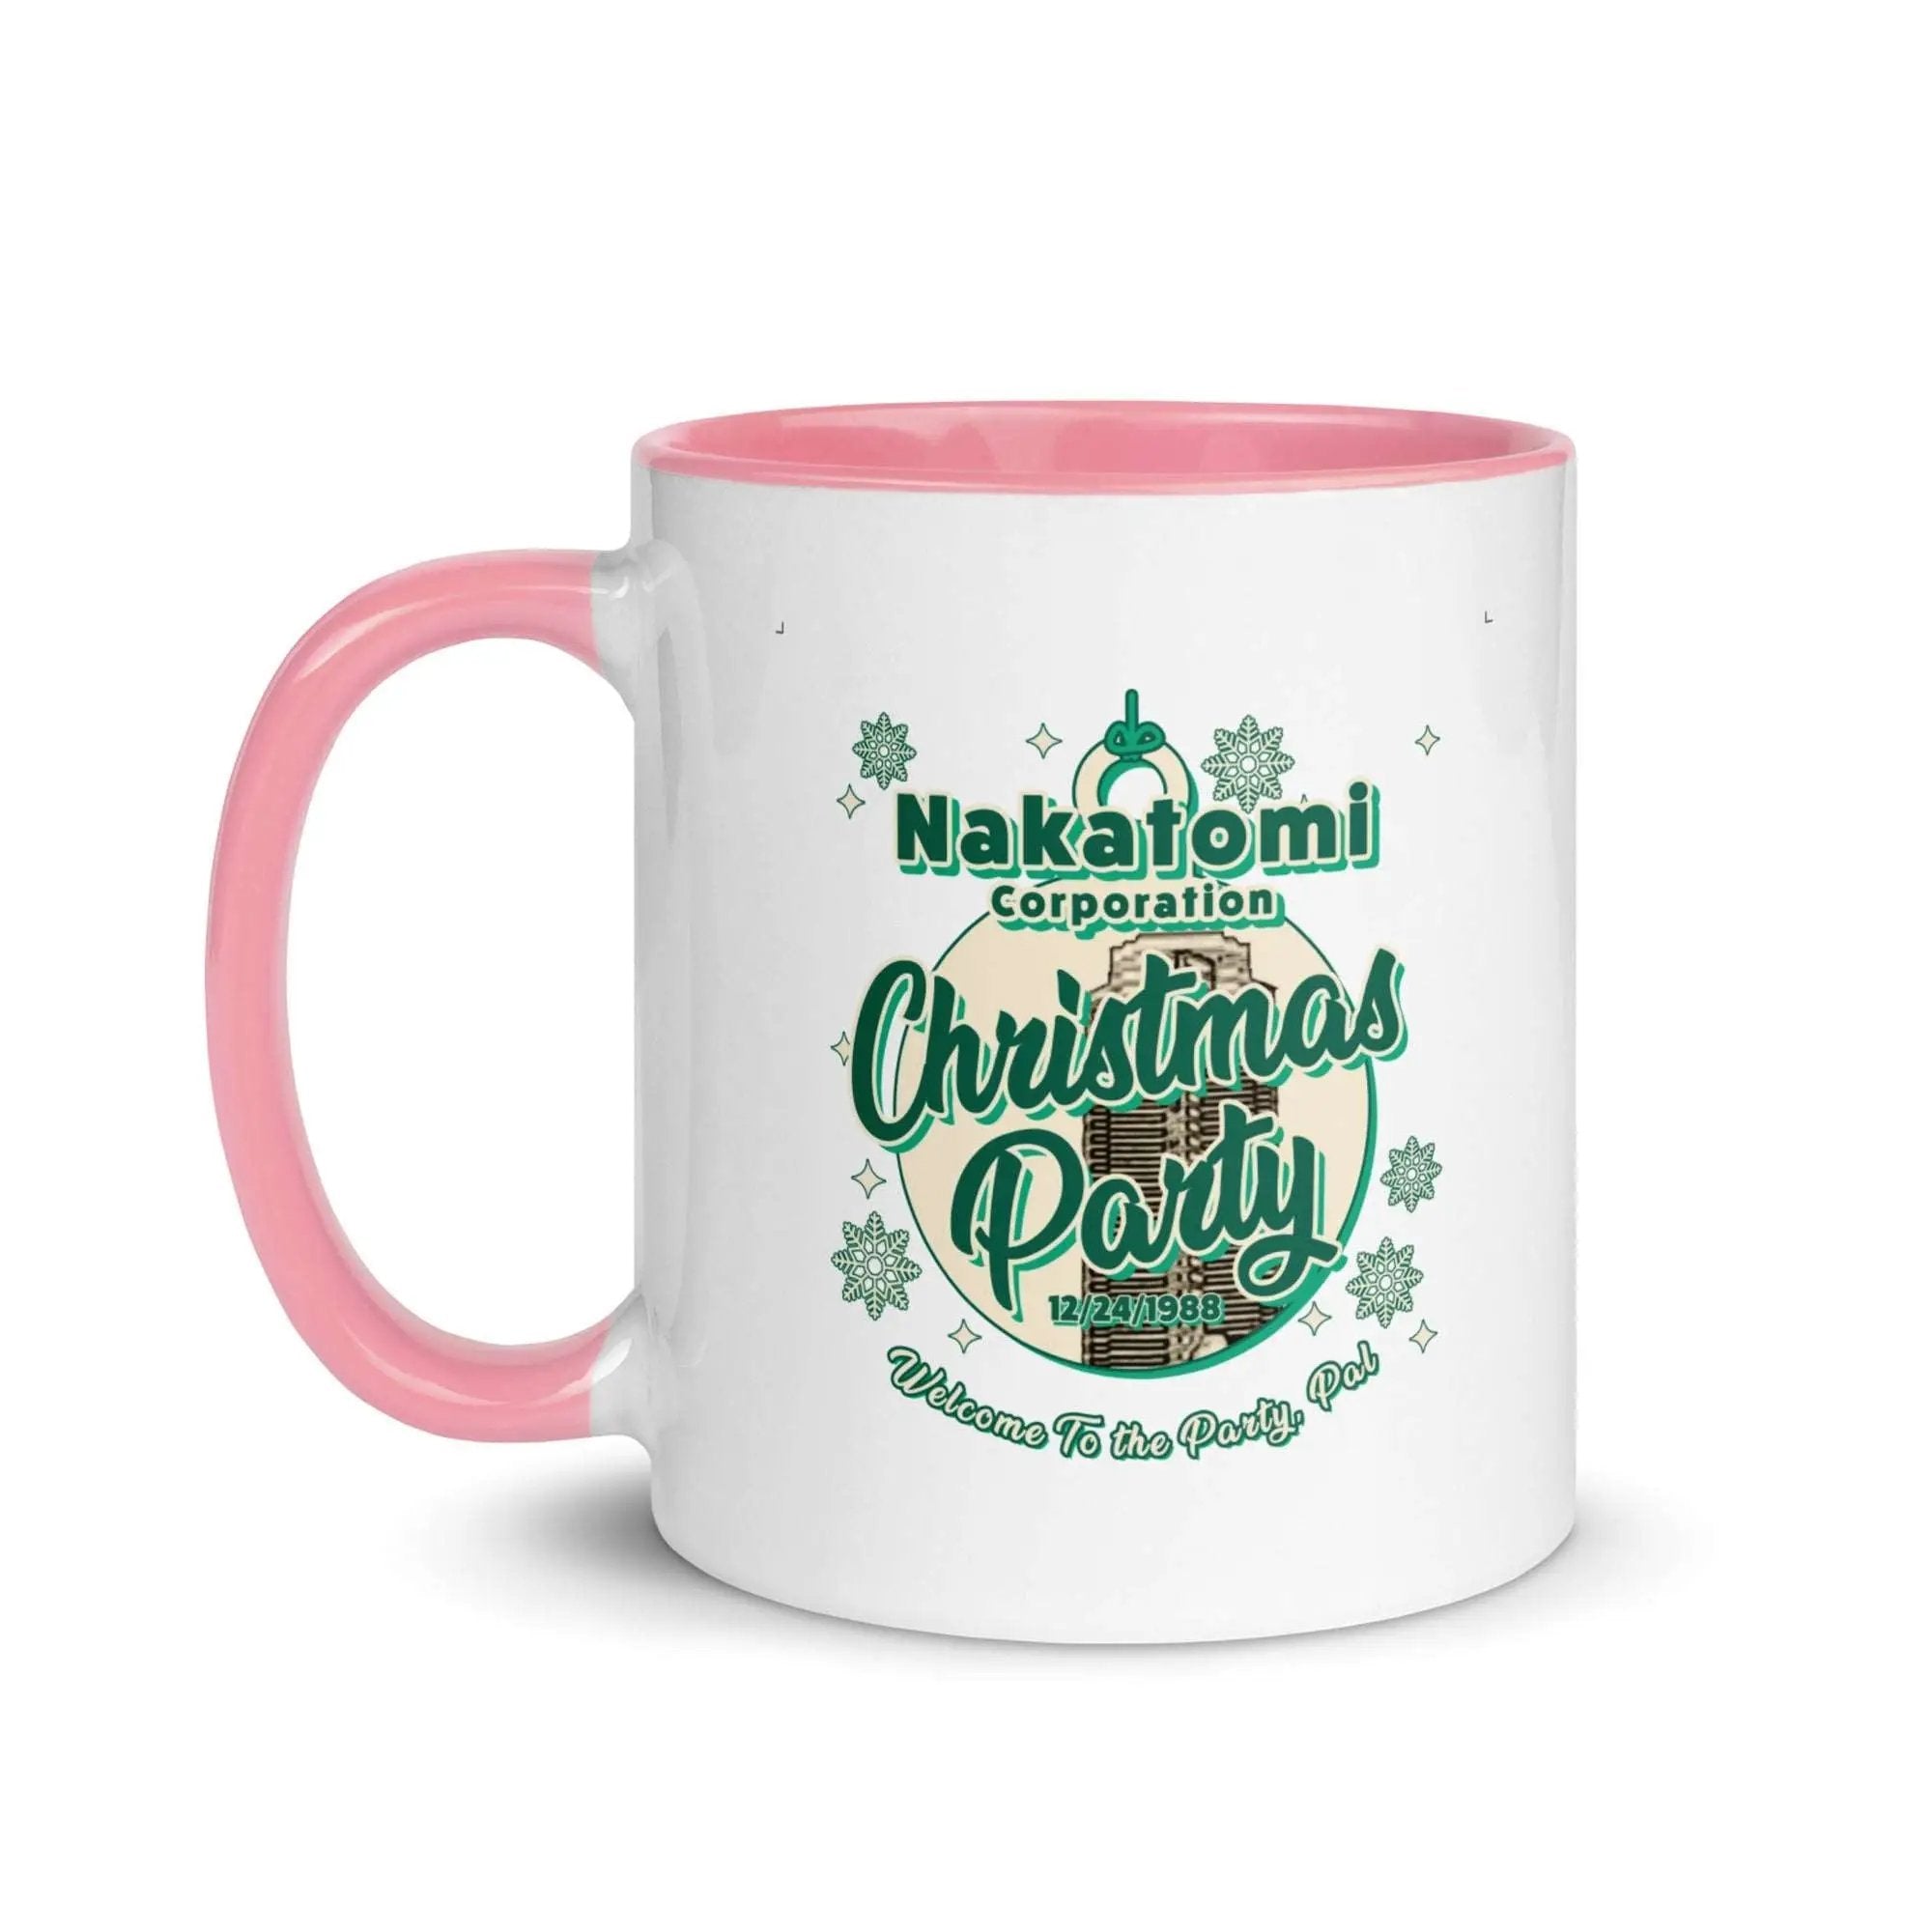 Nakatomi Christmas Party Mug with Color Inside